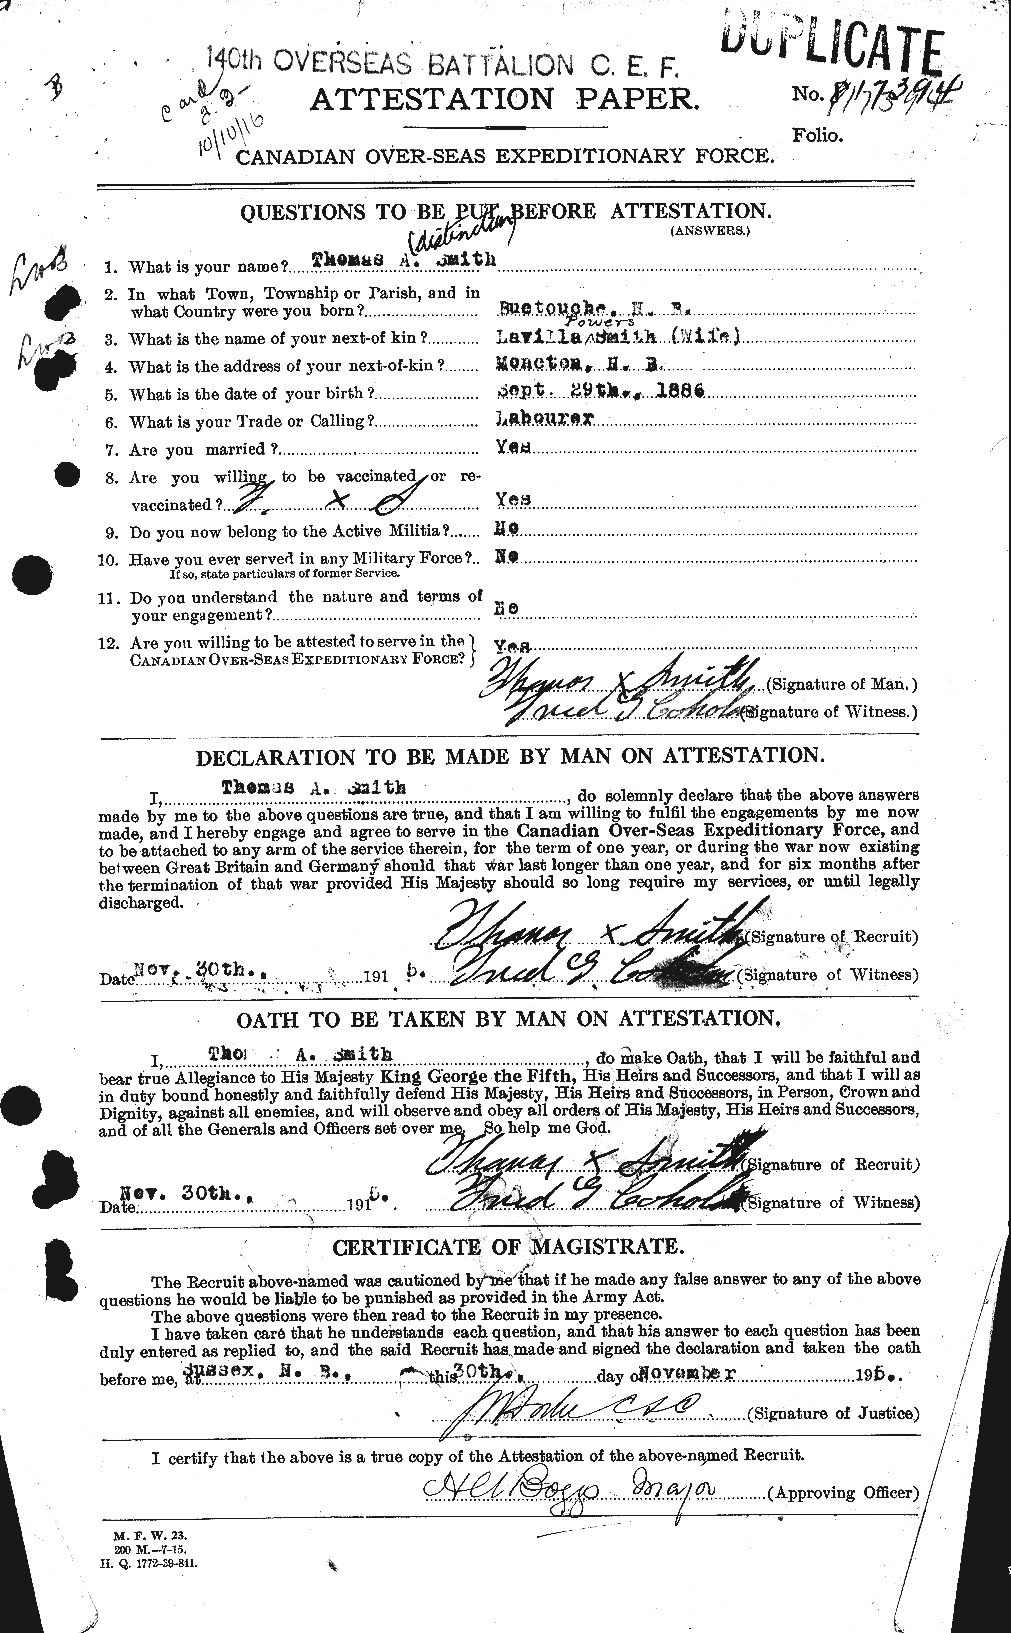 Dossiers du Personnel de la Première Guerre mondiale - CEC 106674a